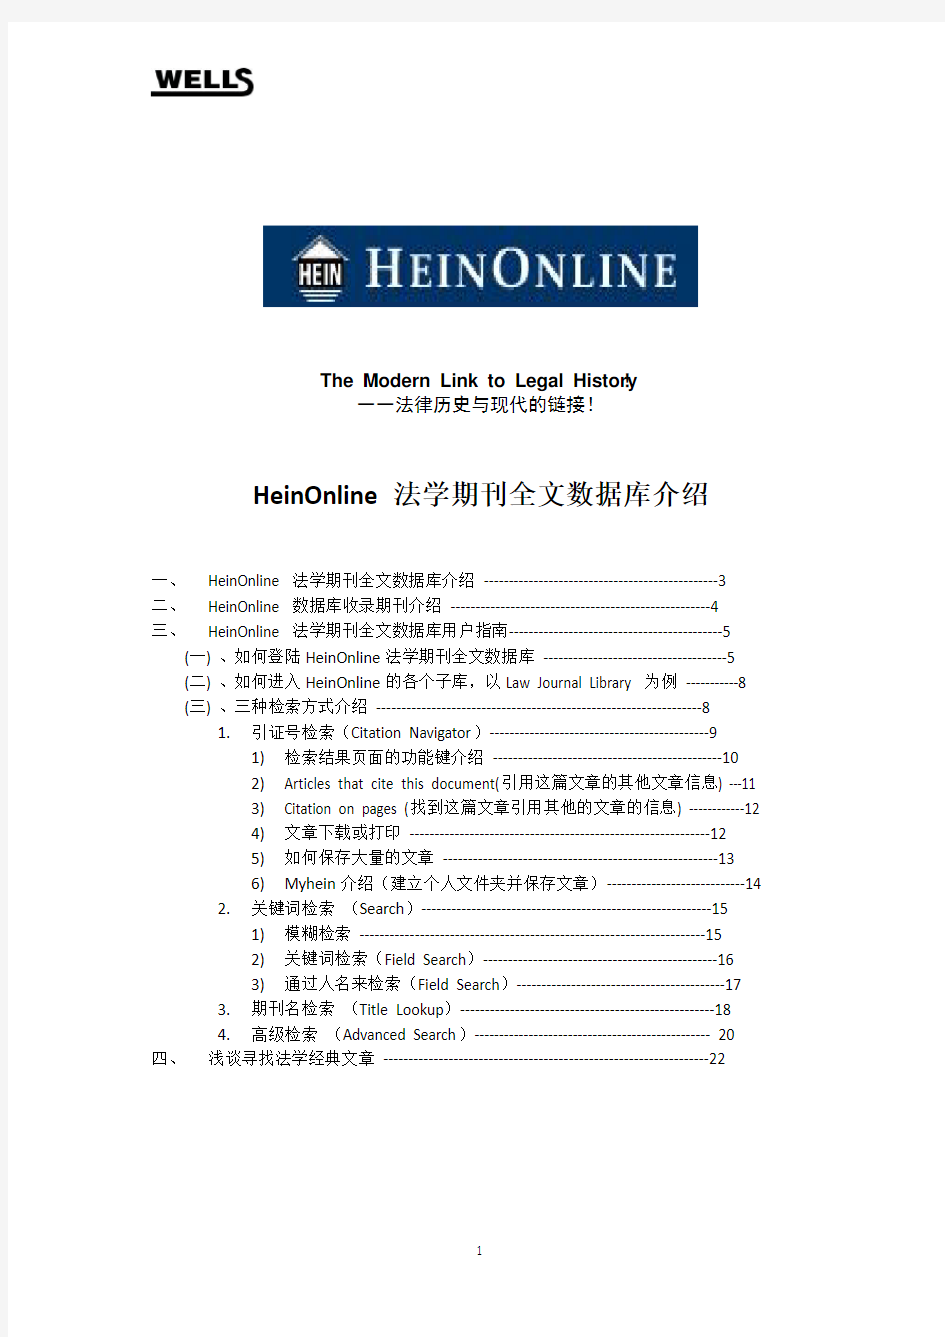 HeinOnline 数据库介绍及使用指南